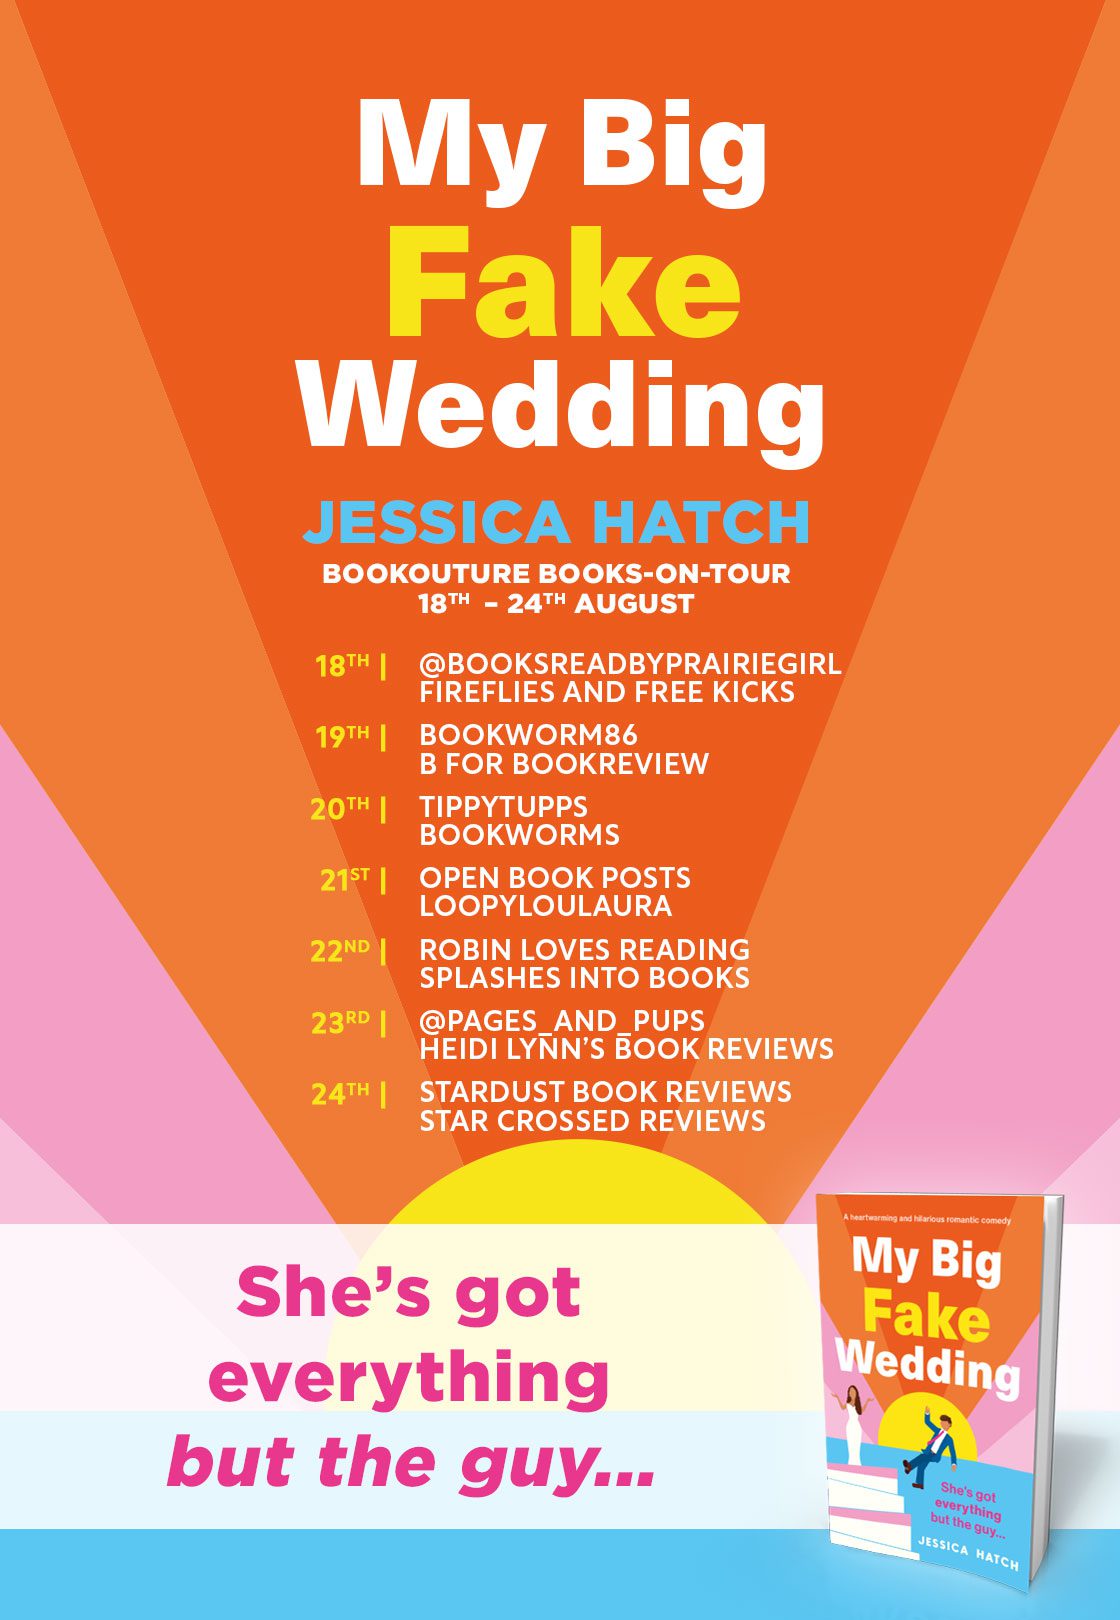 My Big Fake Wedding blog tour banner